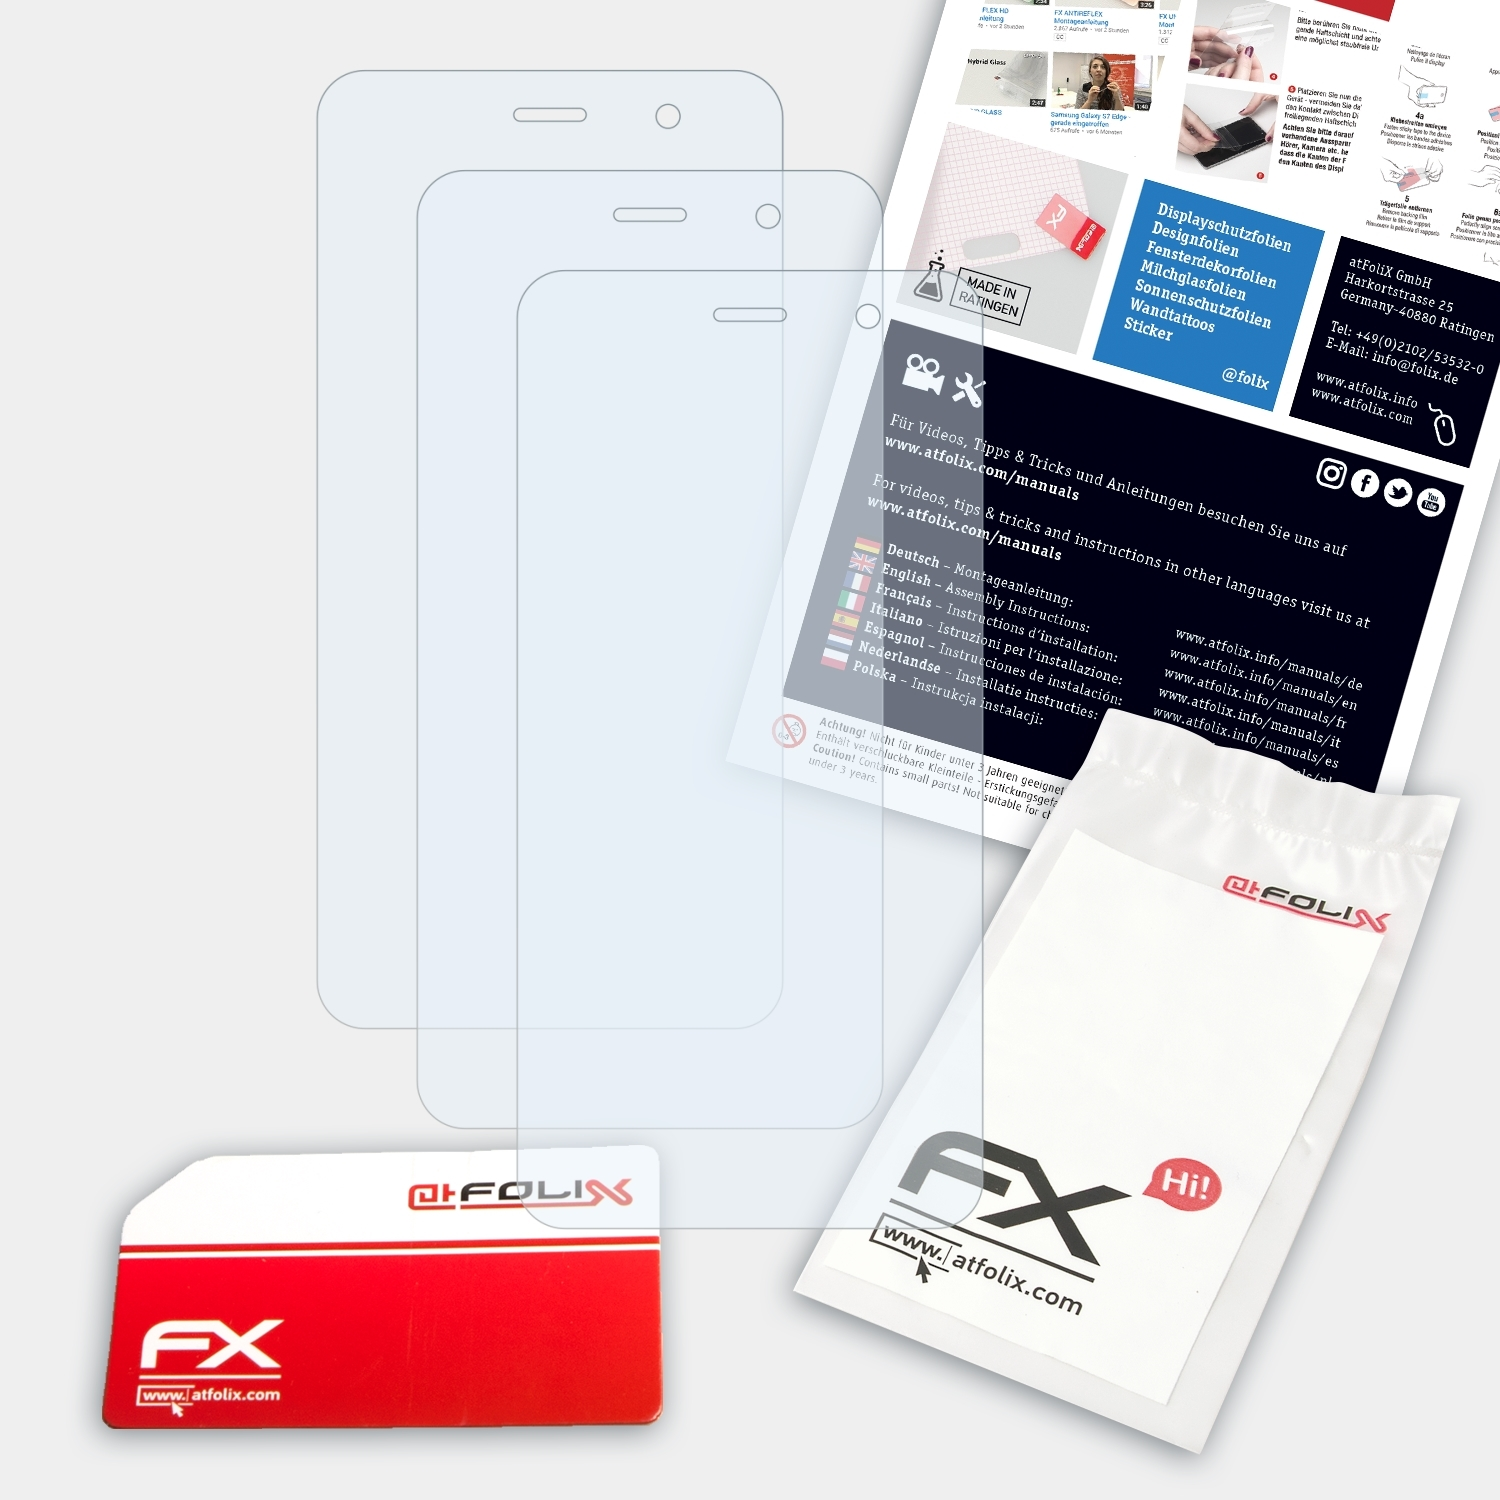 ATFOLIX 3x FX-Clear Displayschutz(für GS160) Gigaset